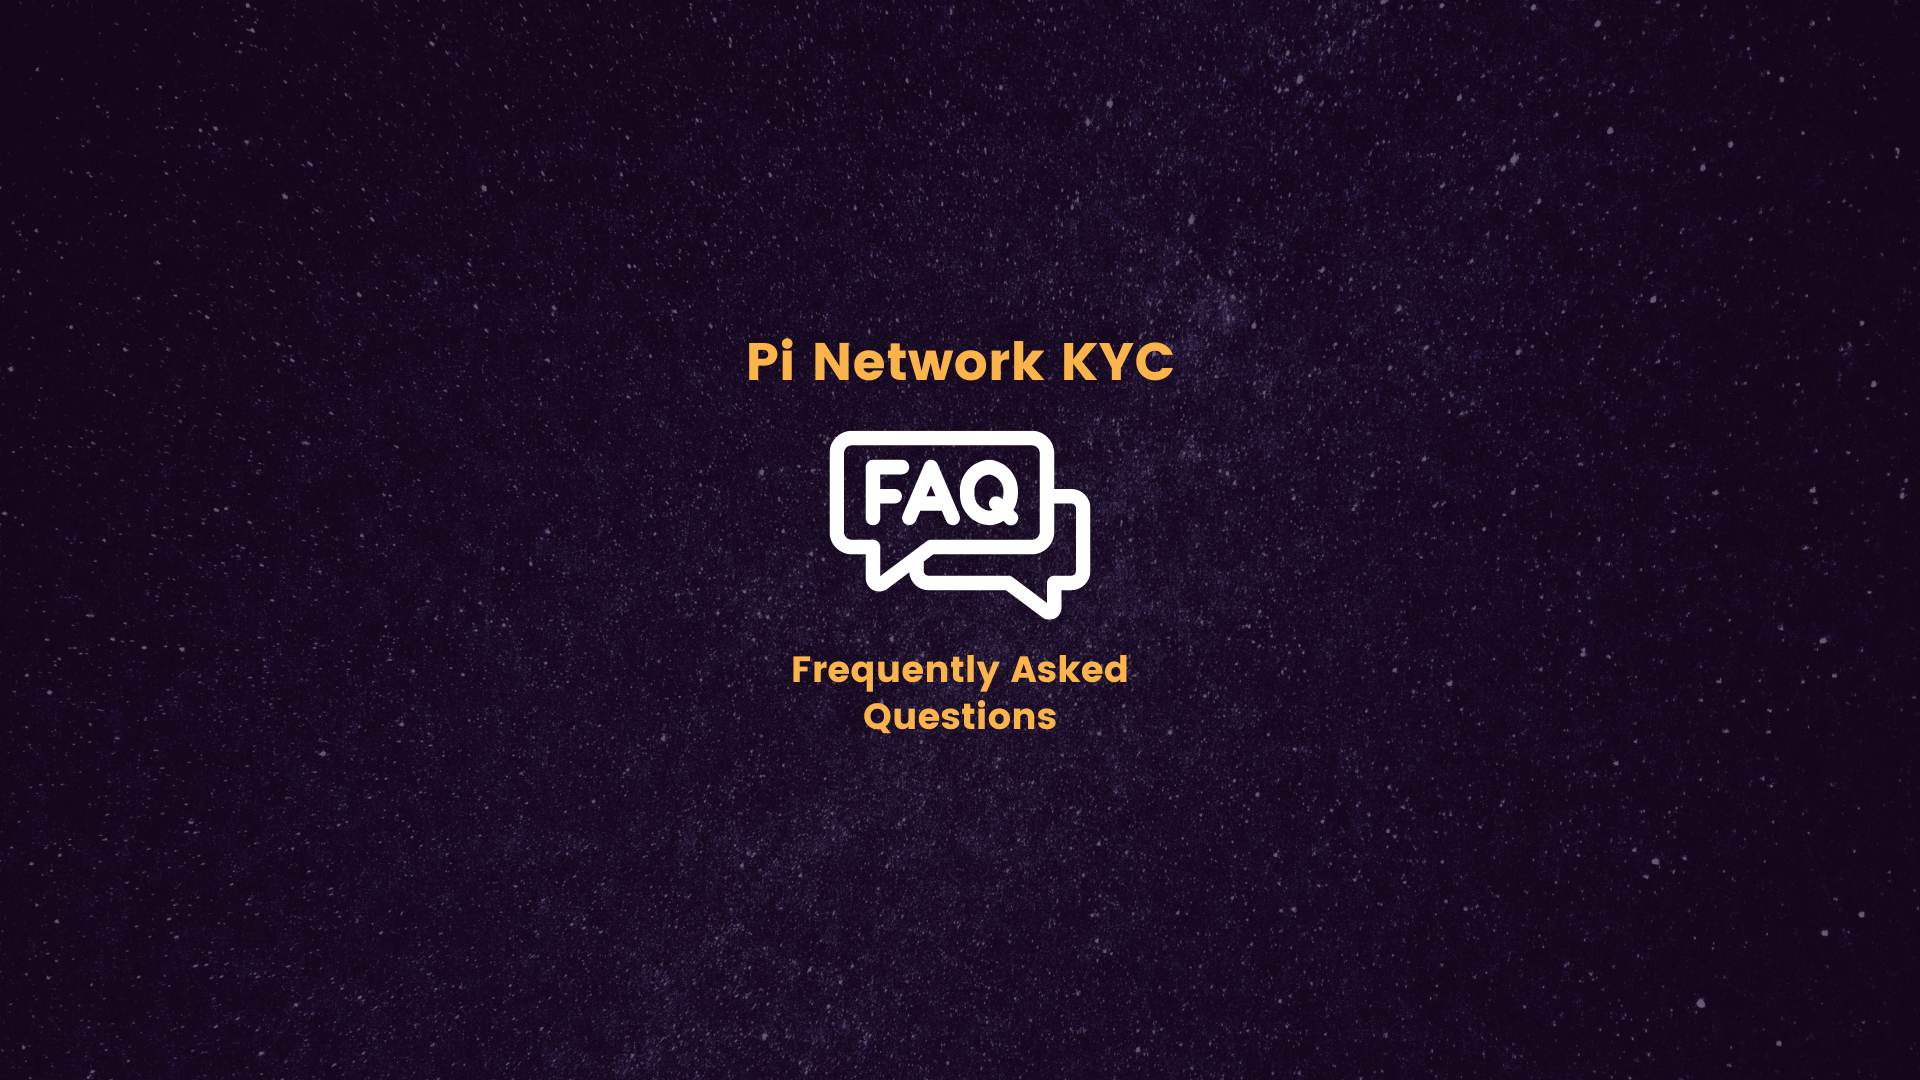 Pi Network KYC FAQs